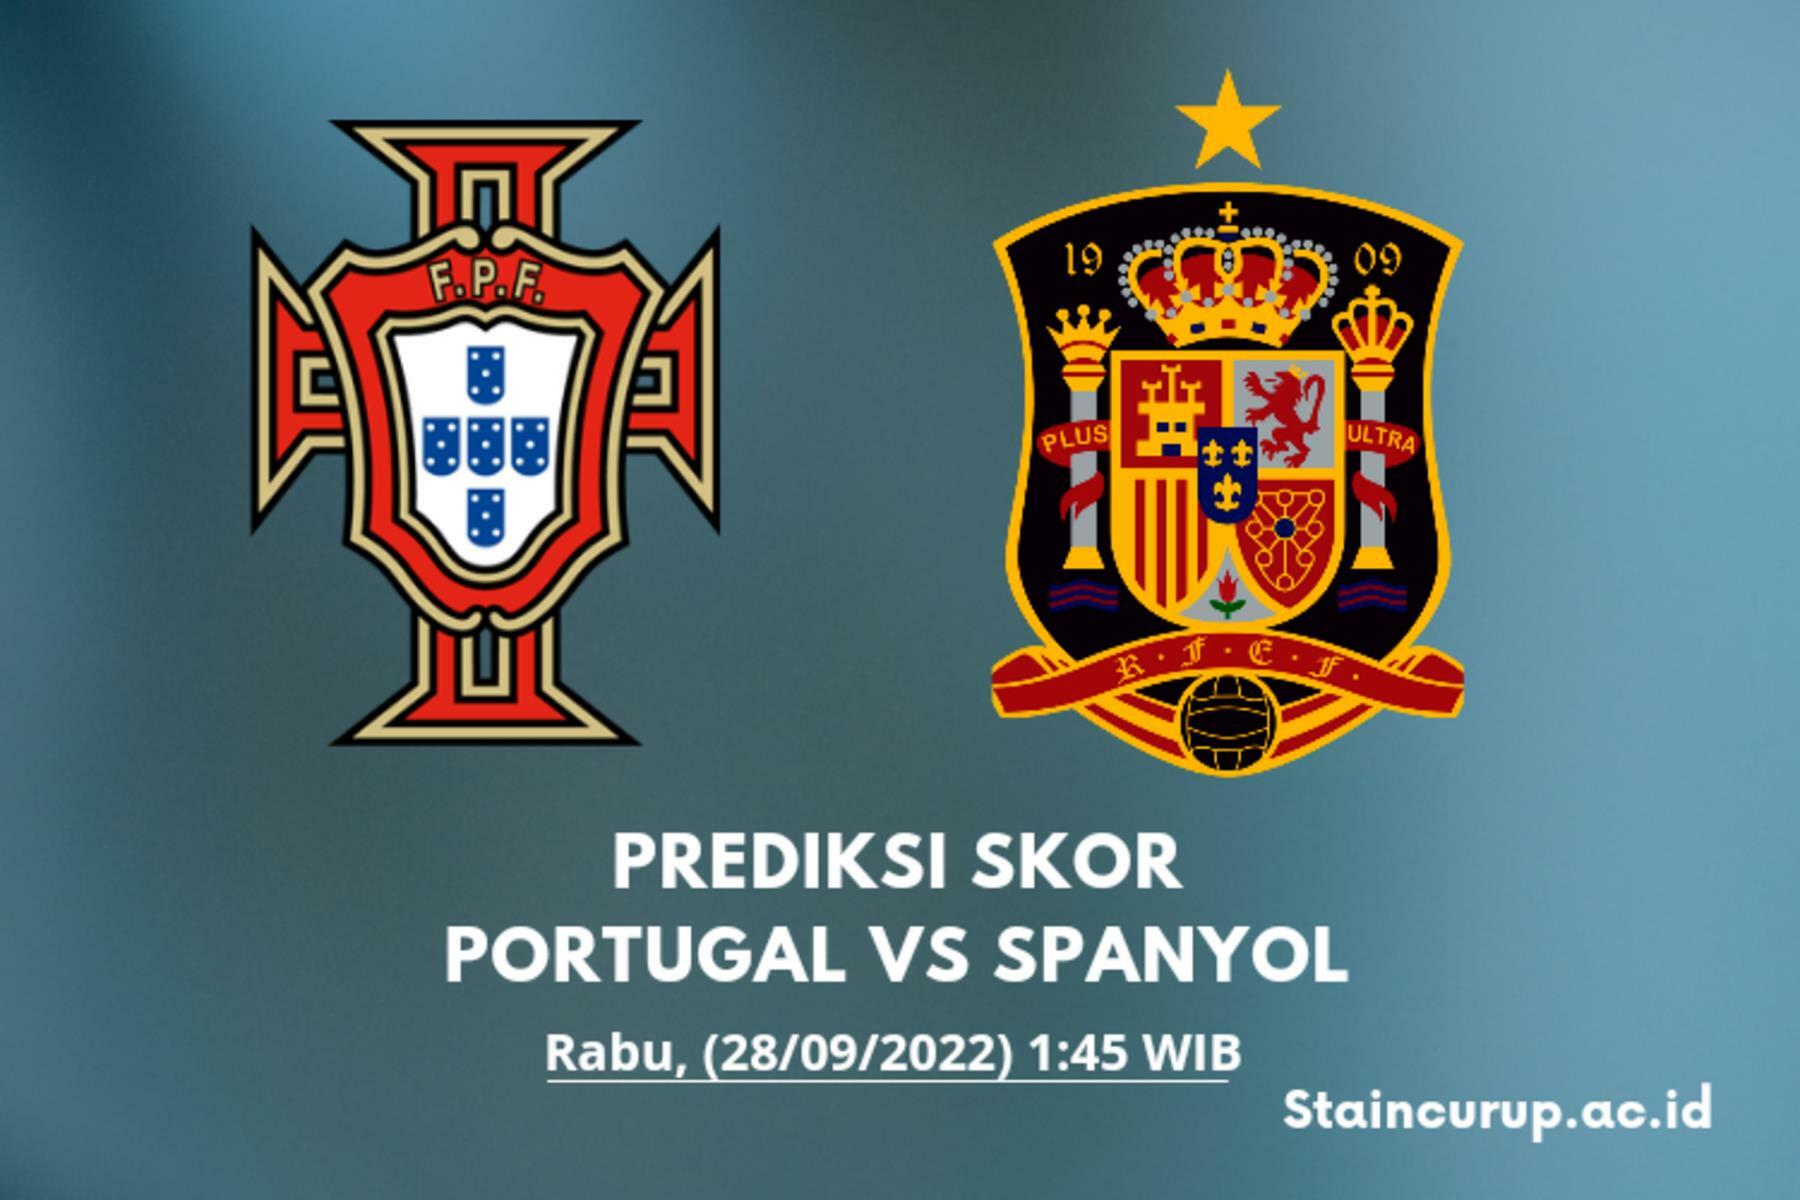 Prediksi Skor Portugal vs Spanyol UEFA Nations League 2022